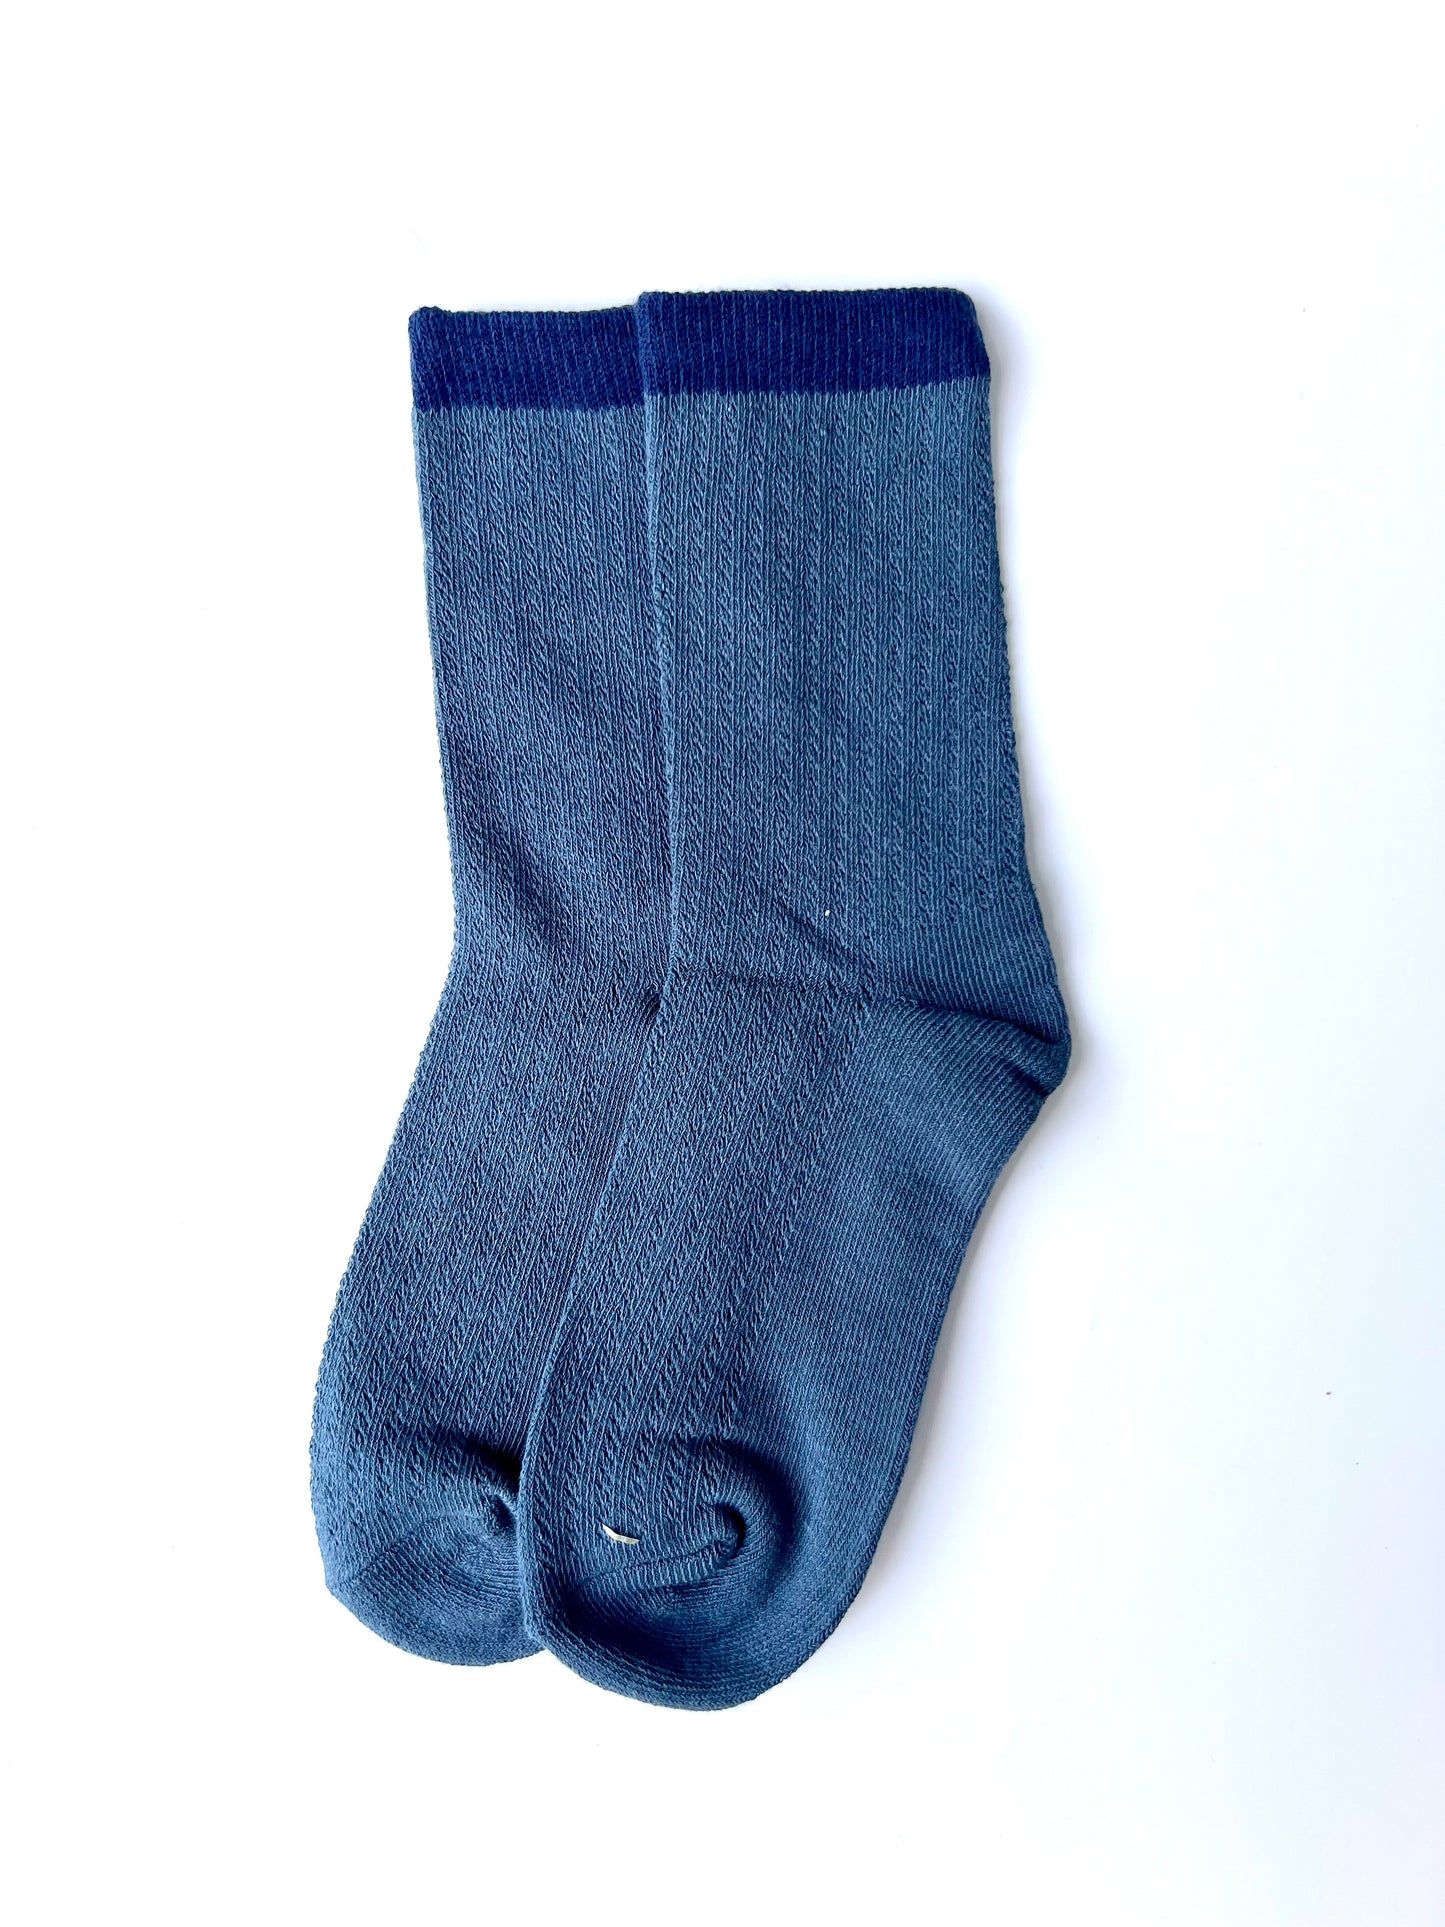 Starlet socks